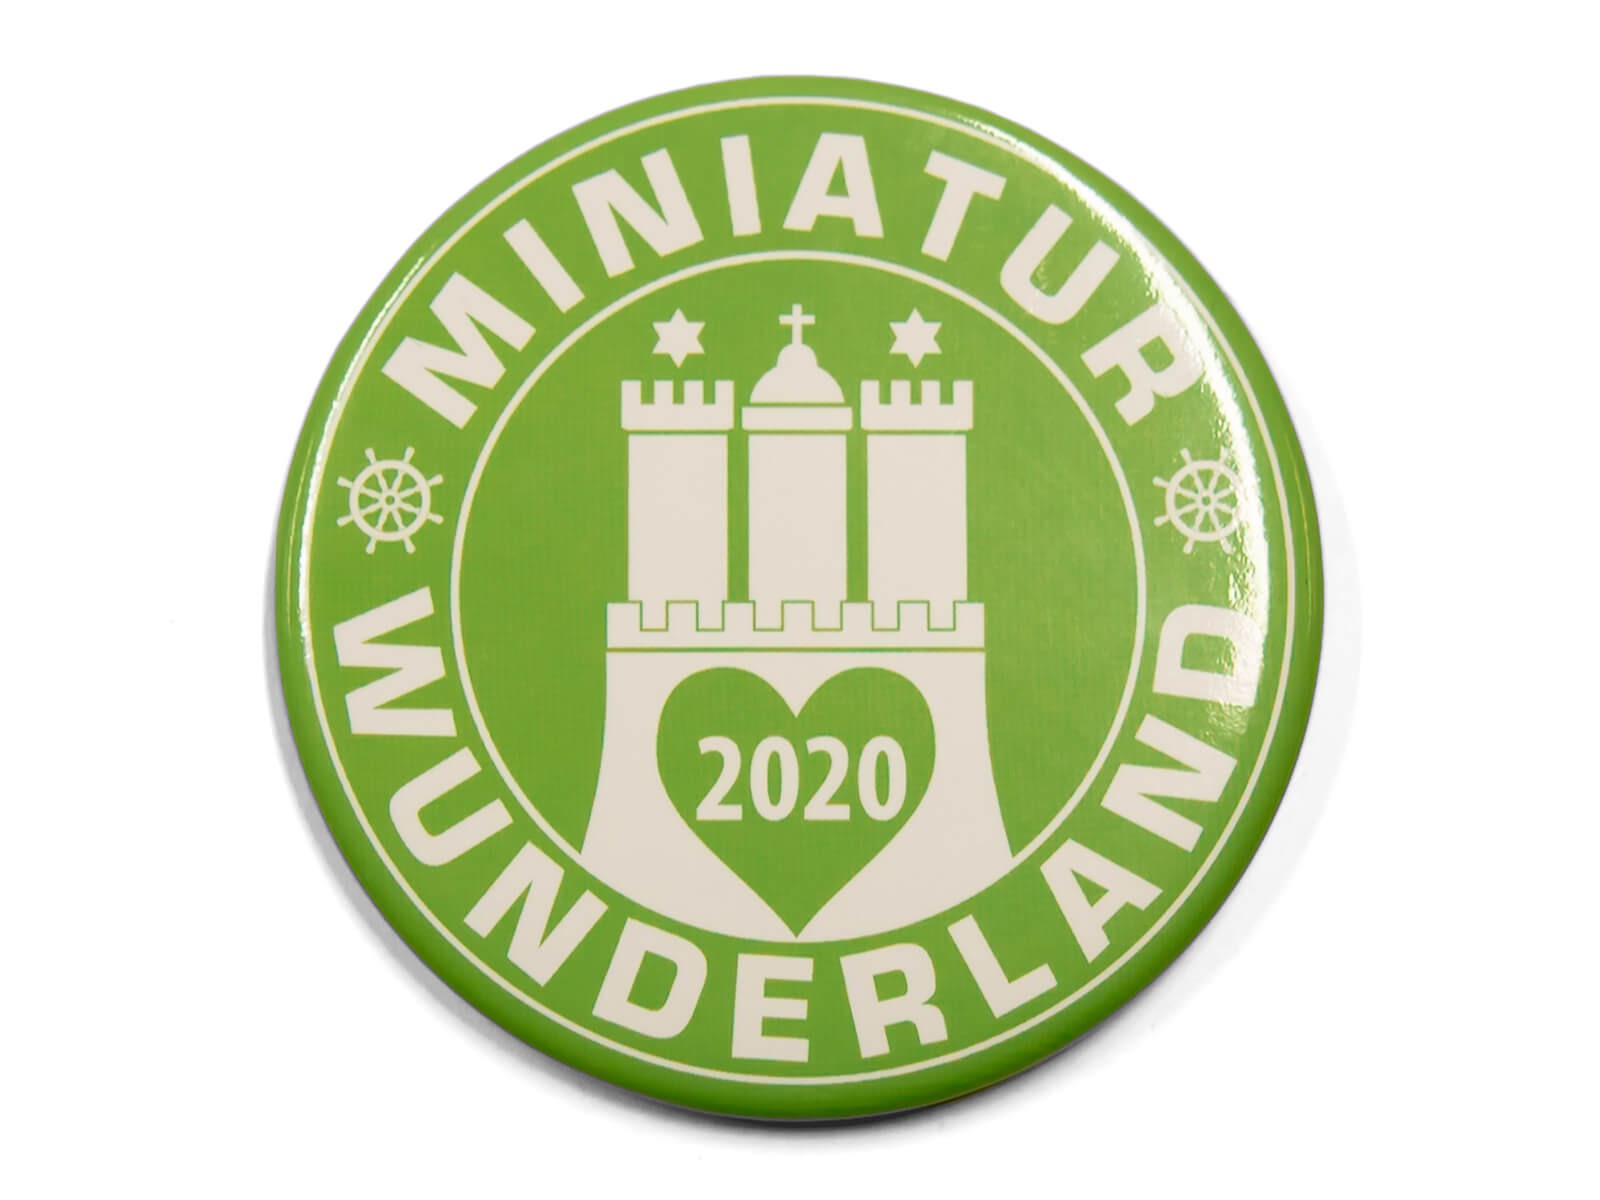 Sammlermagnet Miniatur Wunderland 2020